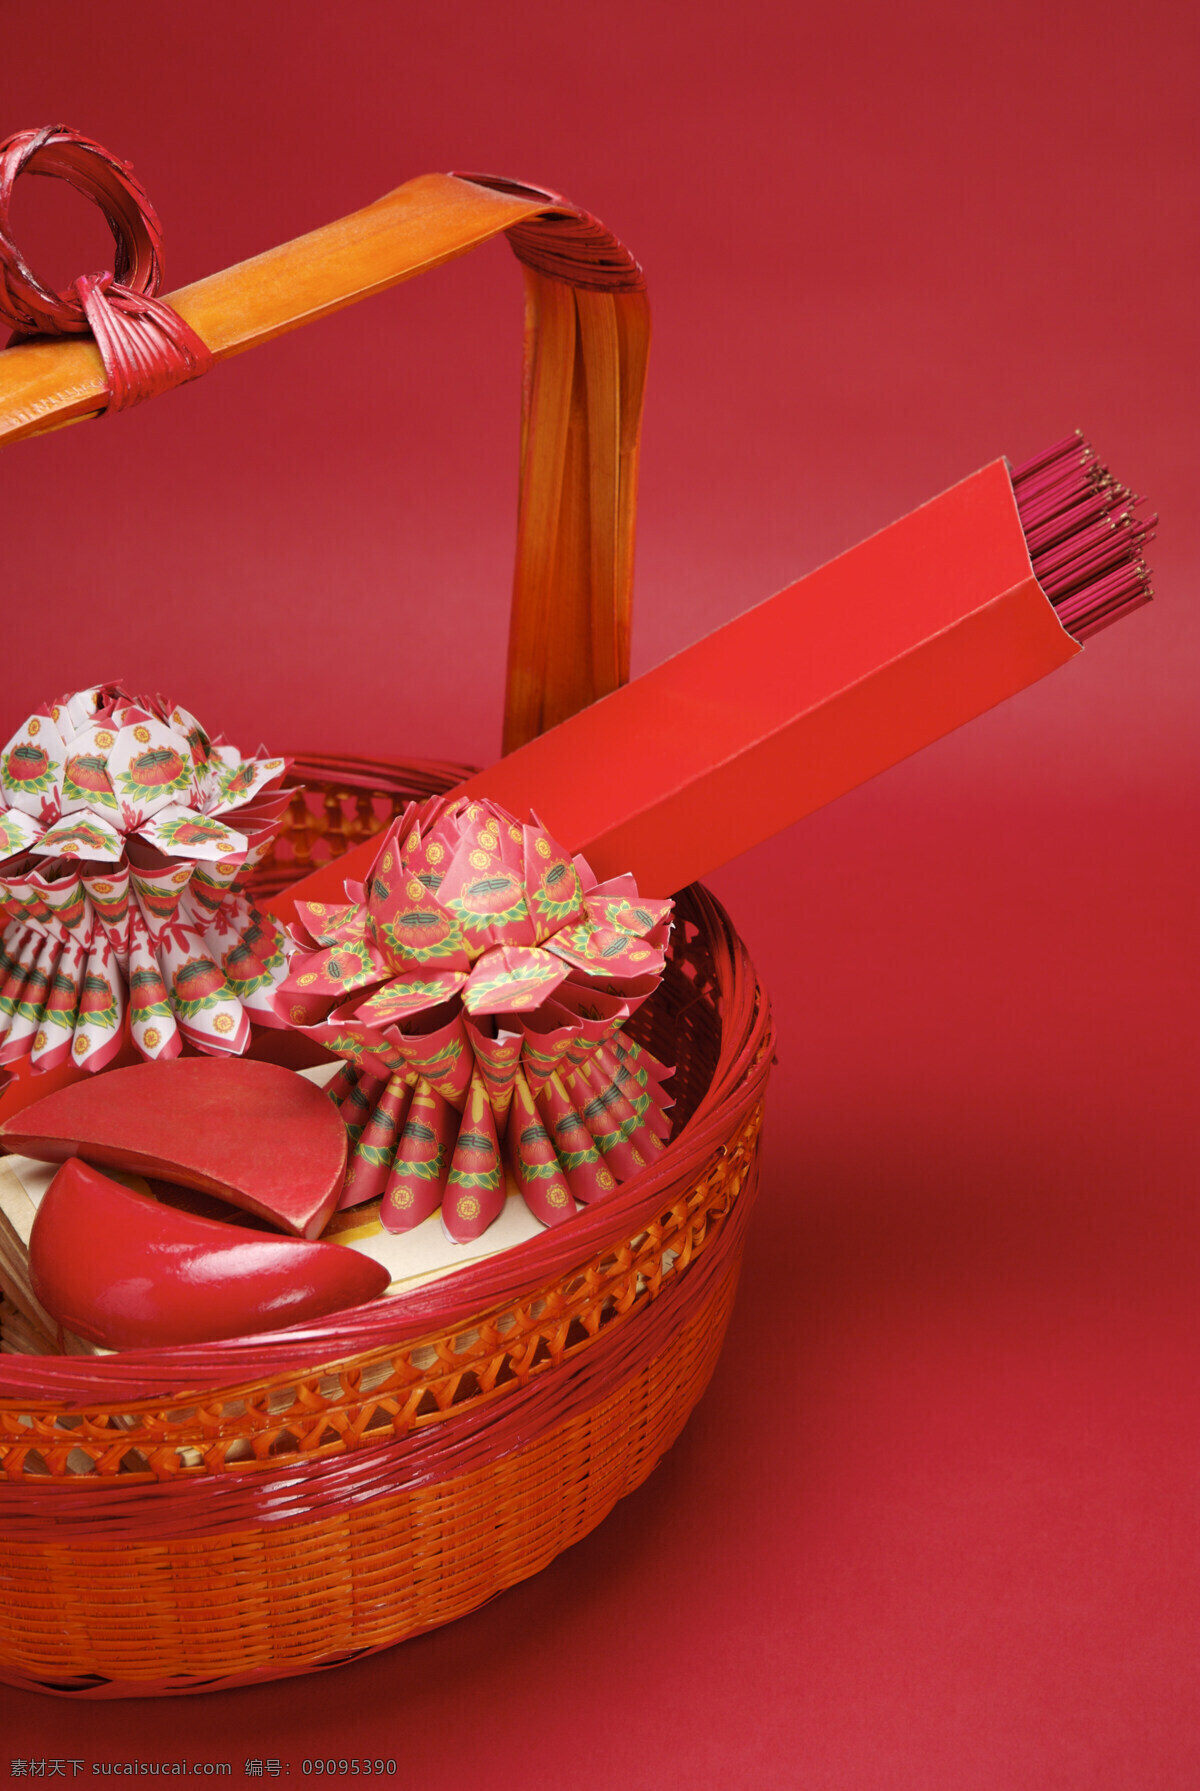 清明节 祭祀 用品 红色 香 祭祀用品 祭祖 金纸 博杯 背景图片